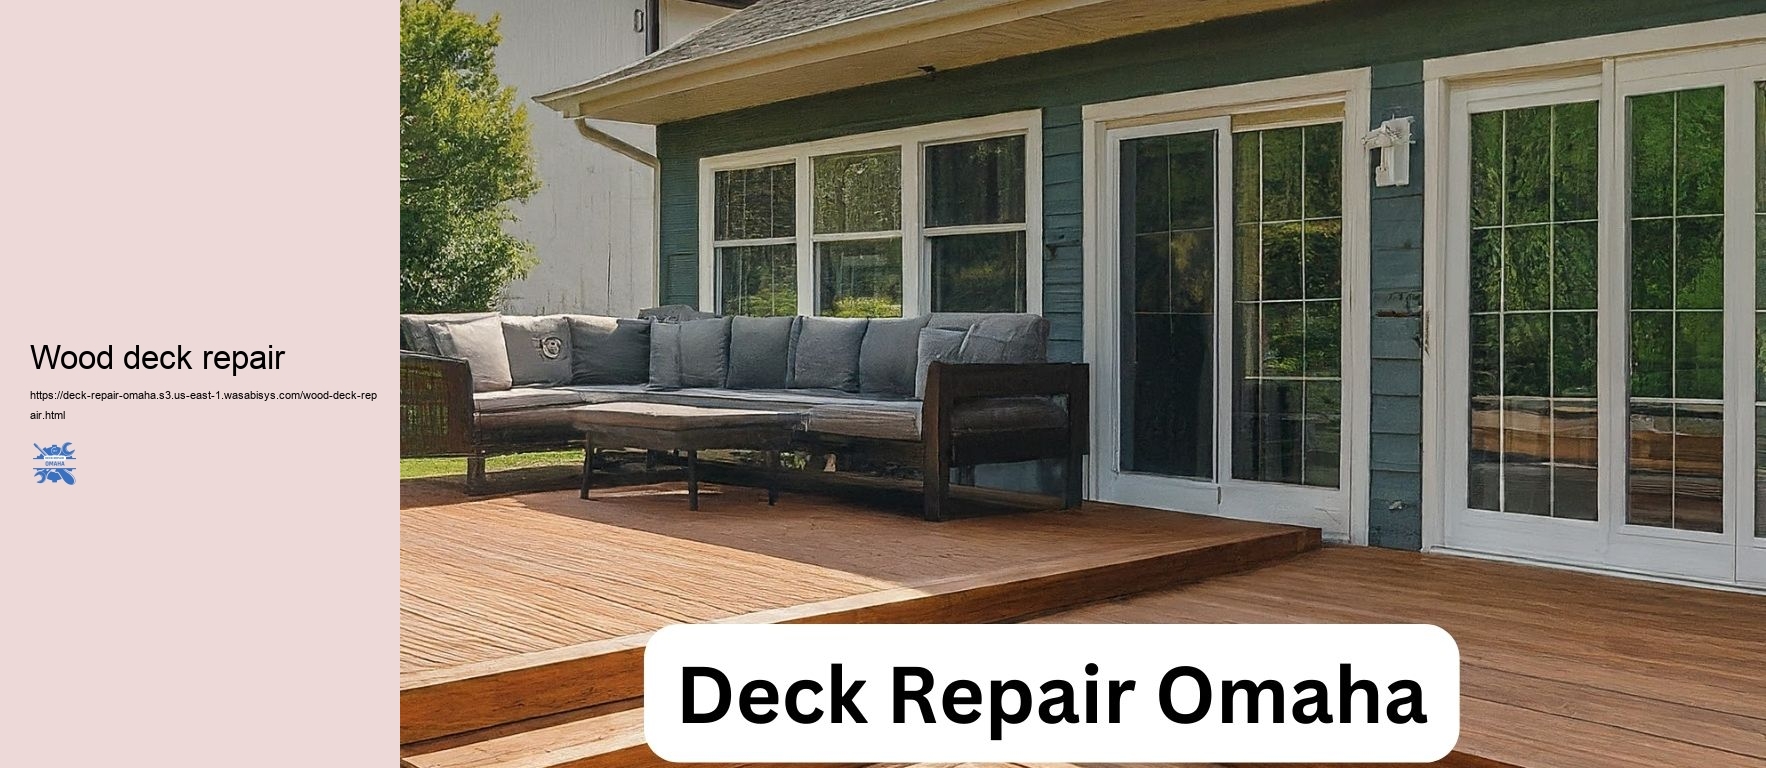 Wood deck repair